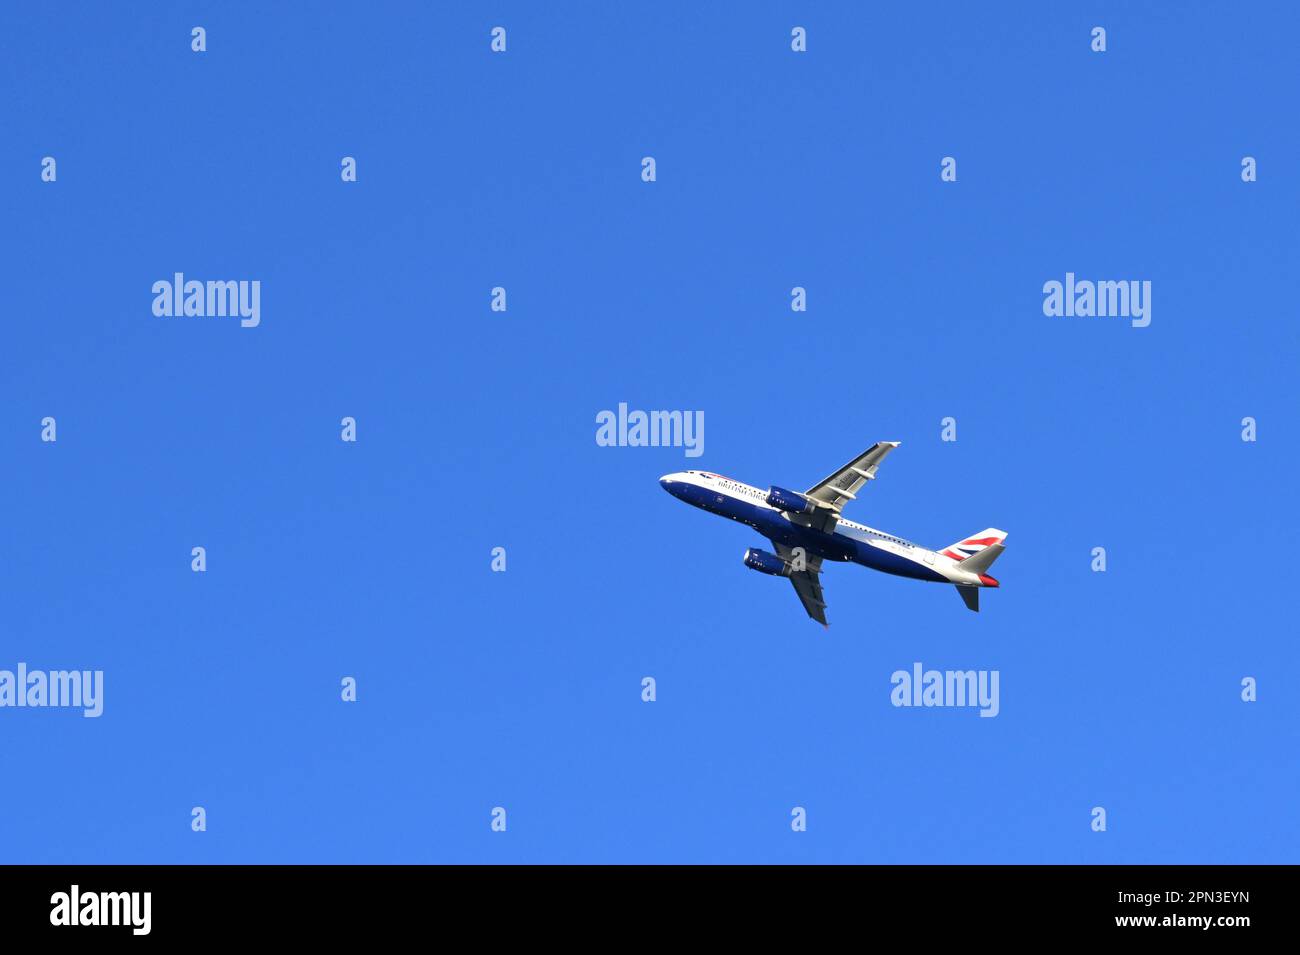 Londres, Angleterre - janvier 2023: British Airways Airbus escalade après décollage de l'aéroport de Heathrow isolé contre un ciel bleu profond Banque D'Images